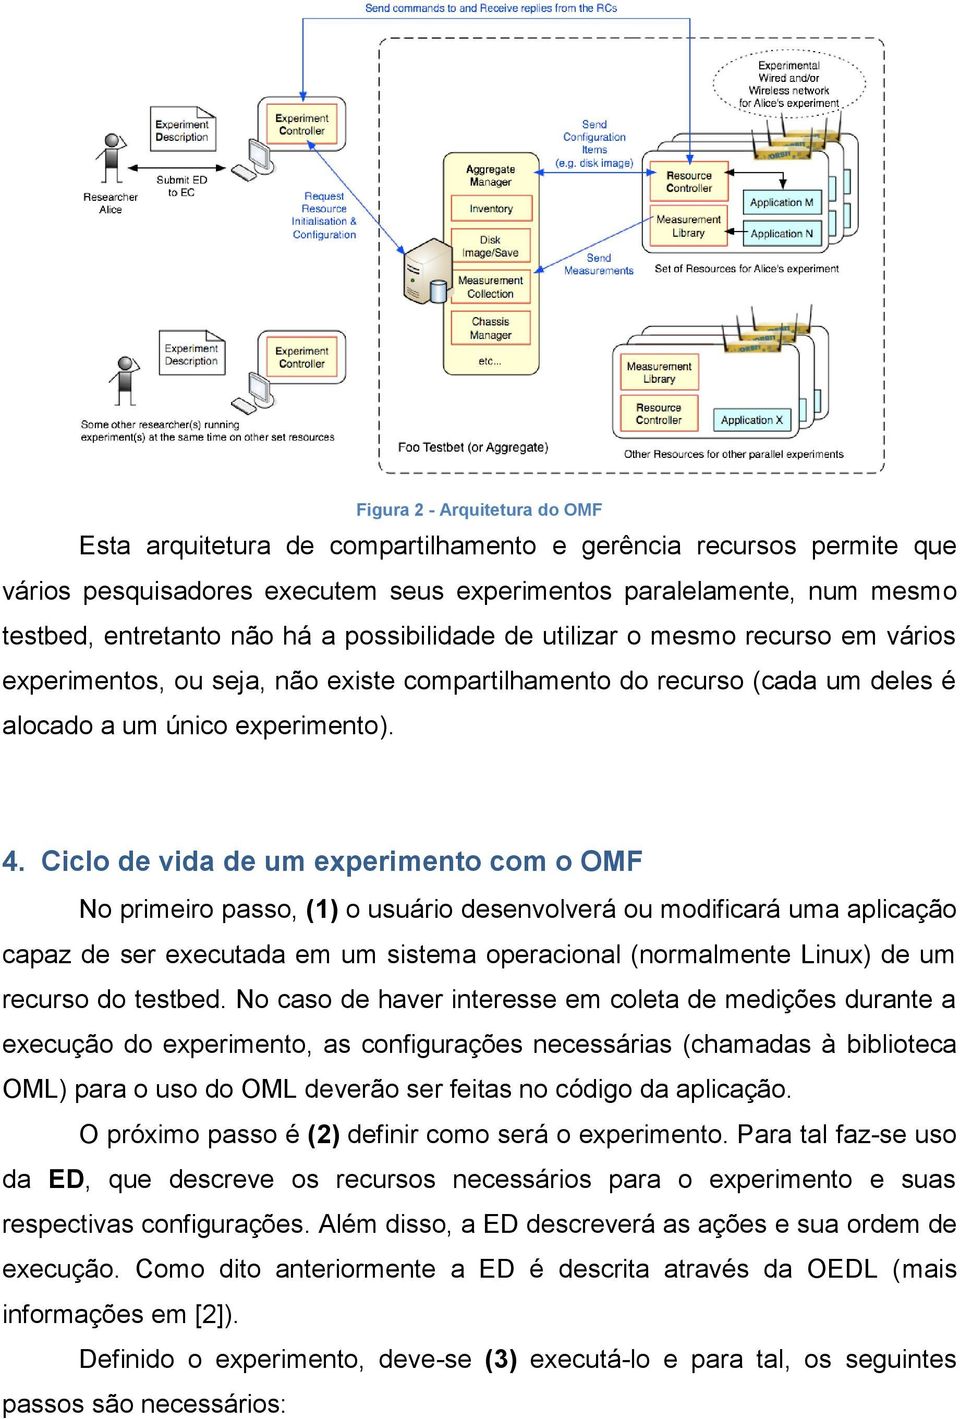 Ciclo de vida de um experimento com o OMF No primeiro passo, (1) o usuário desenvolverá ou modificará uma aplicação capaz de ser executada em um sistema operacional (normalmente Linux) de um recurso